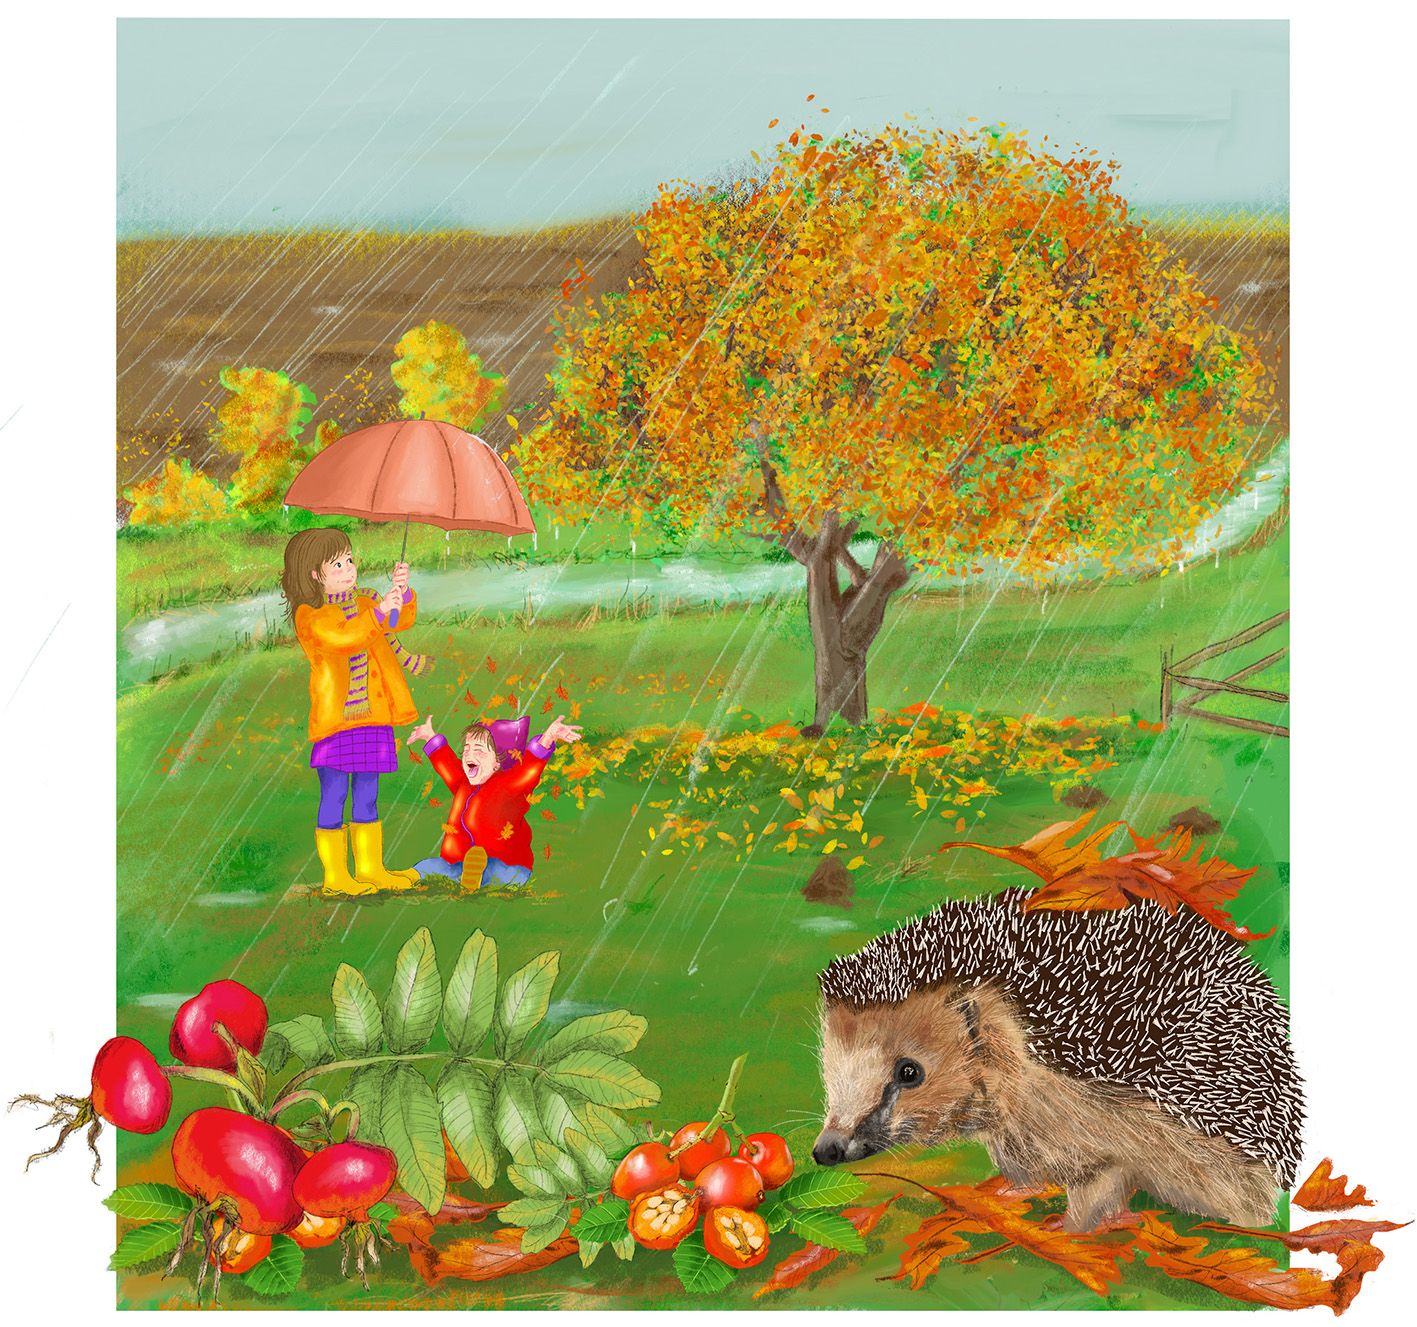 Eine verregnete Wiese im Herbst. Ein Mädchen hält einen REgenschirm, ein Kleinkind sitzt auf der Wiese und jauchzt. Ein Baum verliert seine bunten Blätter. Im Vordergrund ist ein Igel und frisst Hagebutten